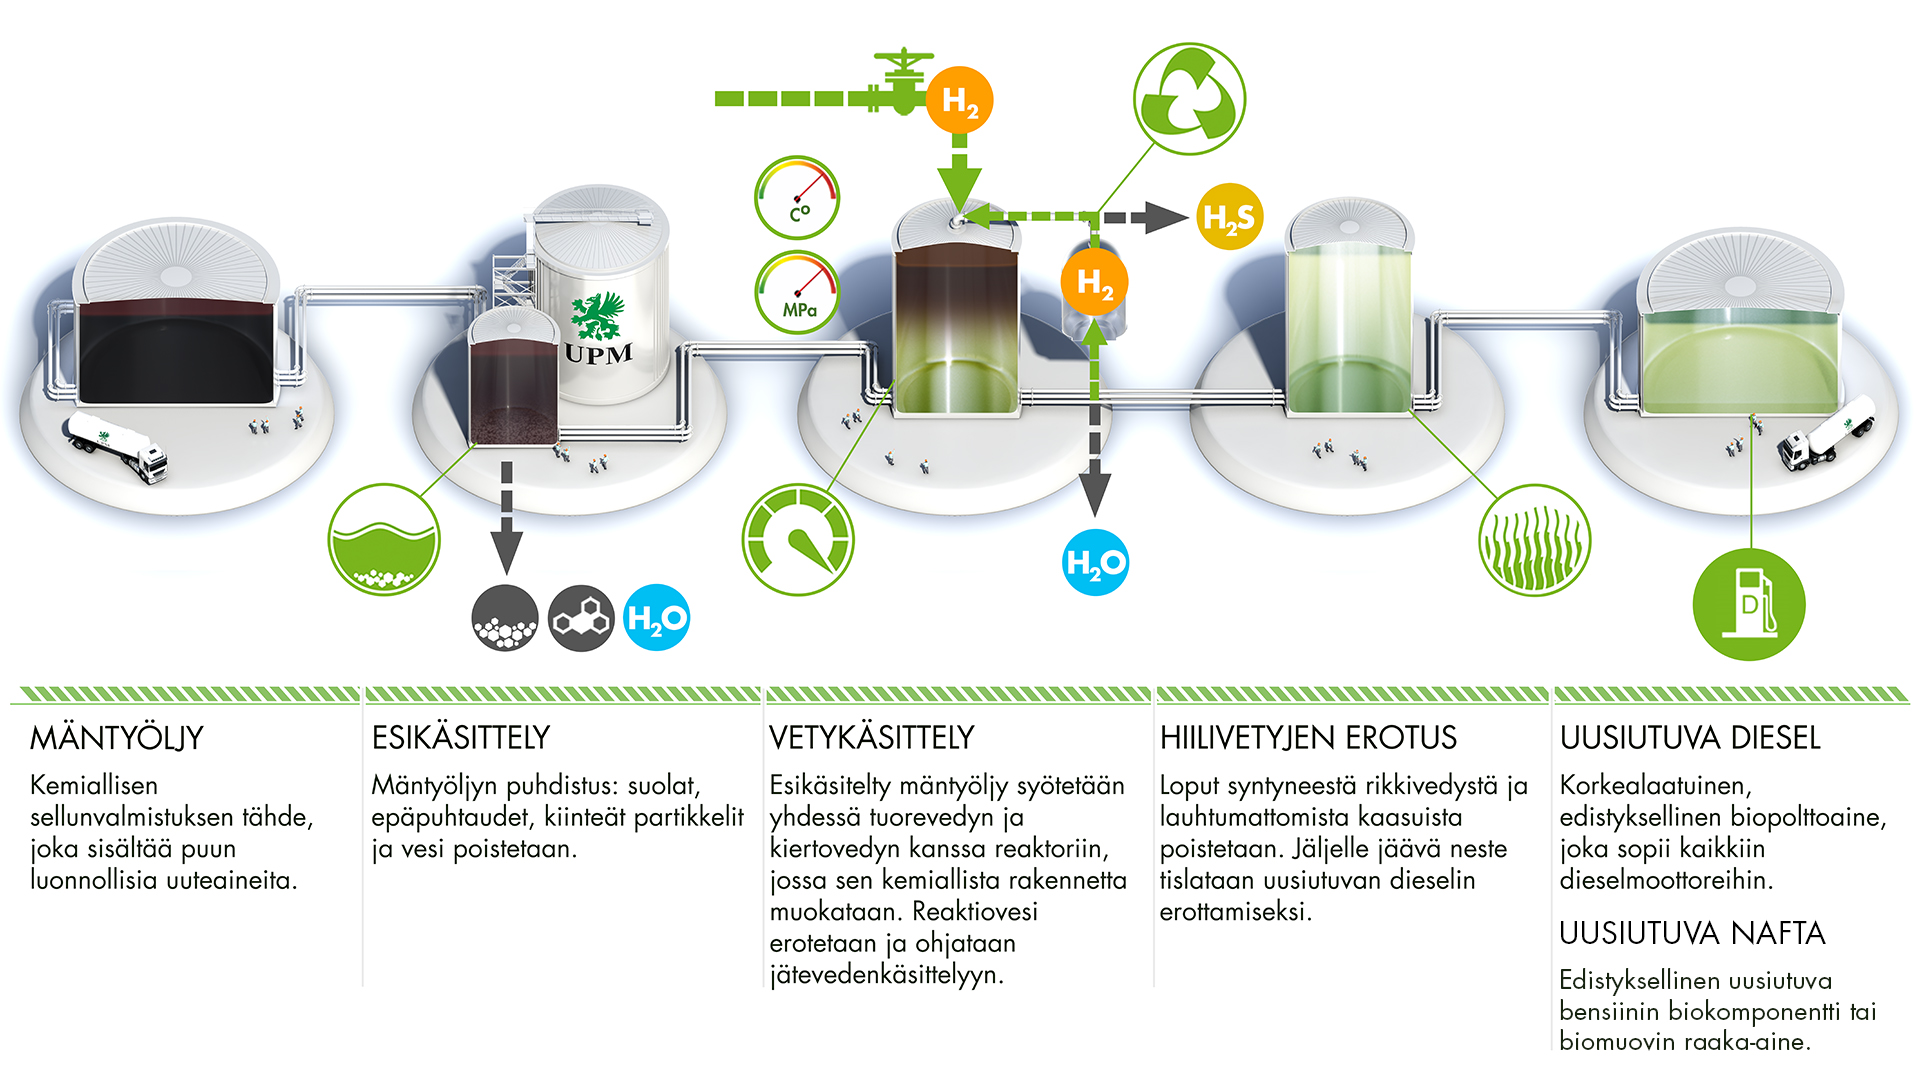 UPM_Biofuels_process_fi.jpg